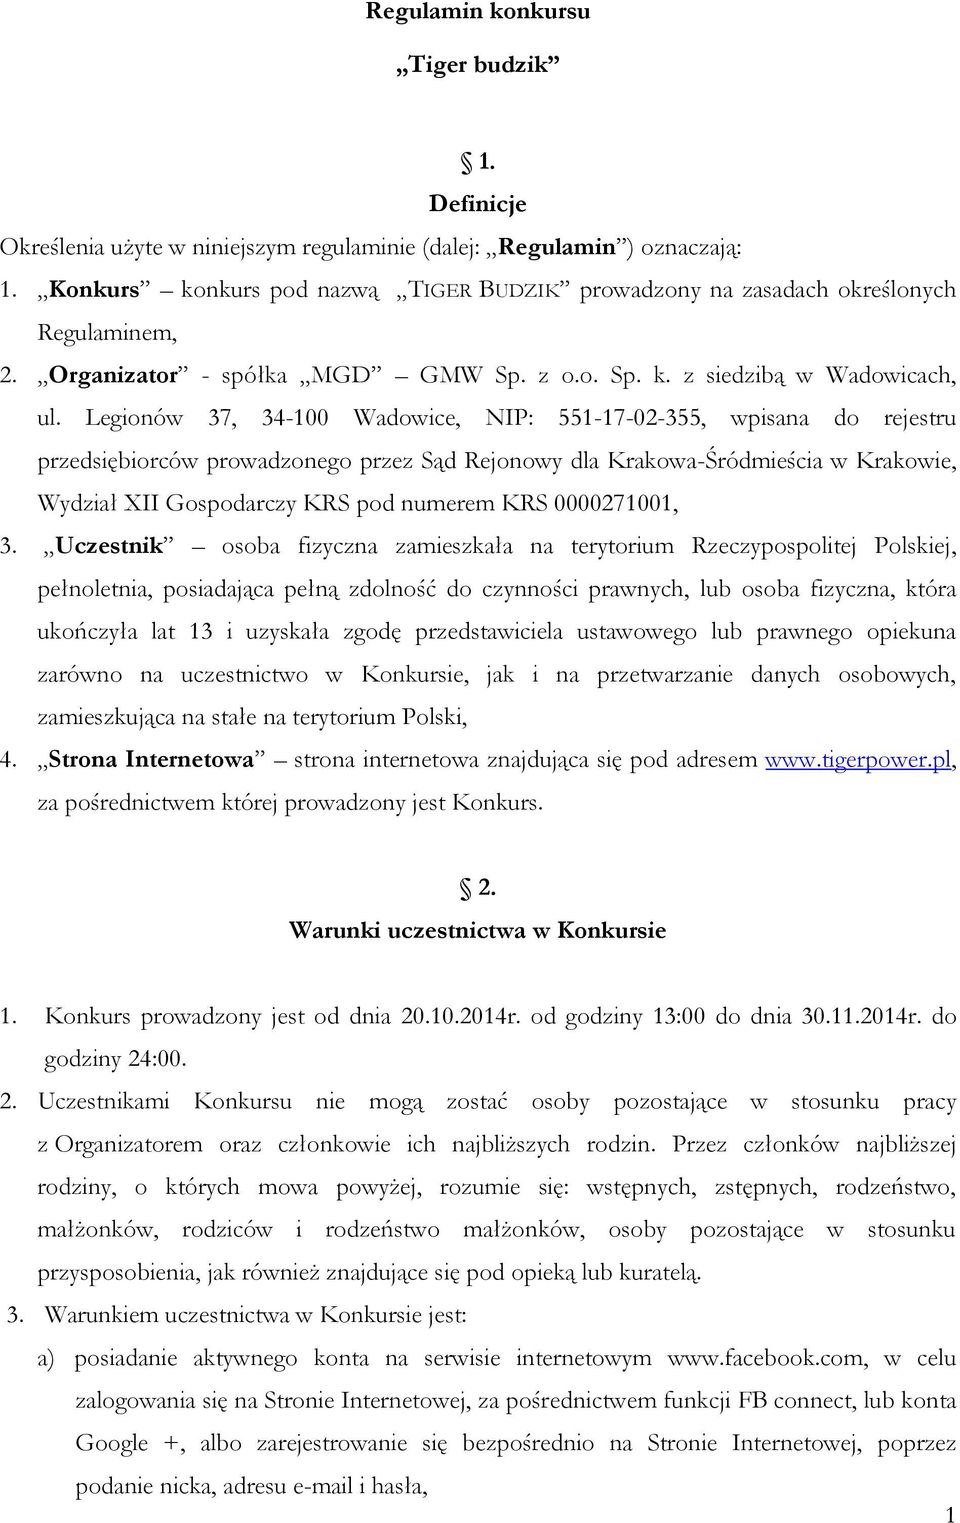 Legionów 37, 34-100 Wadowice, NIP: 551-17-02-355, wpisana do rejestru przedsiębiorców prowadzonego przez Sąd Rejonowy dla Krakowa-Śródmieścia w Krakowie, Wydział XII Gospodarczy KRS pod numerem KRS